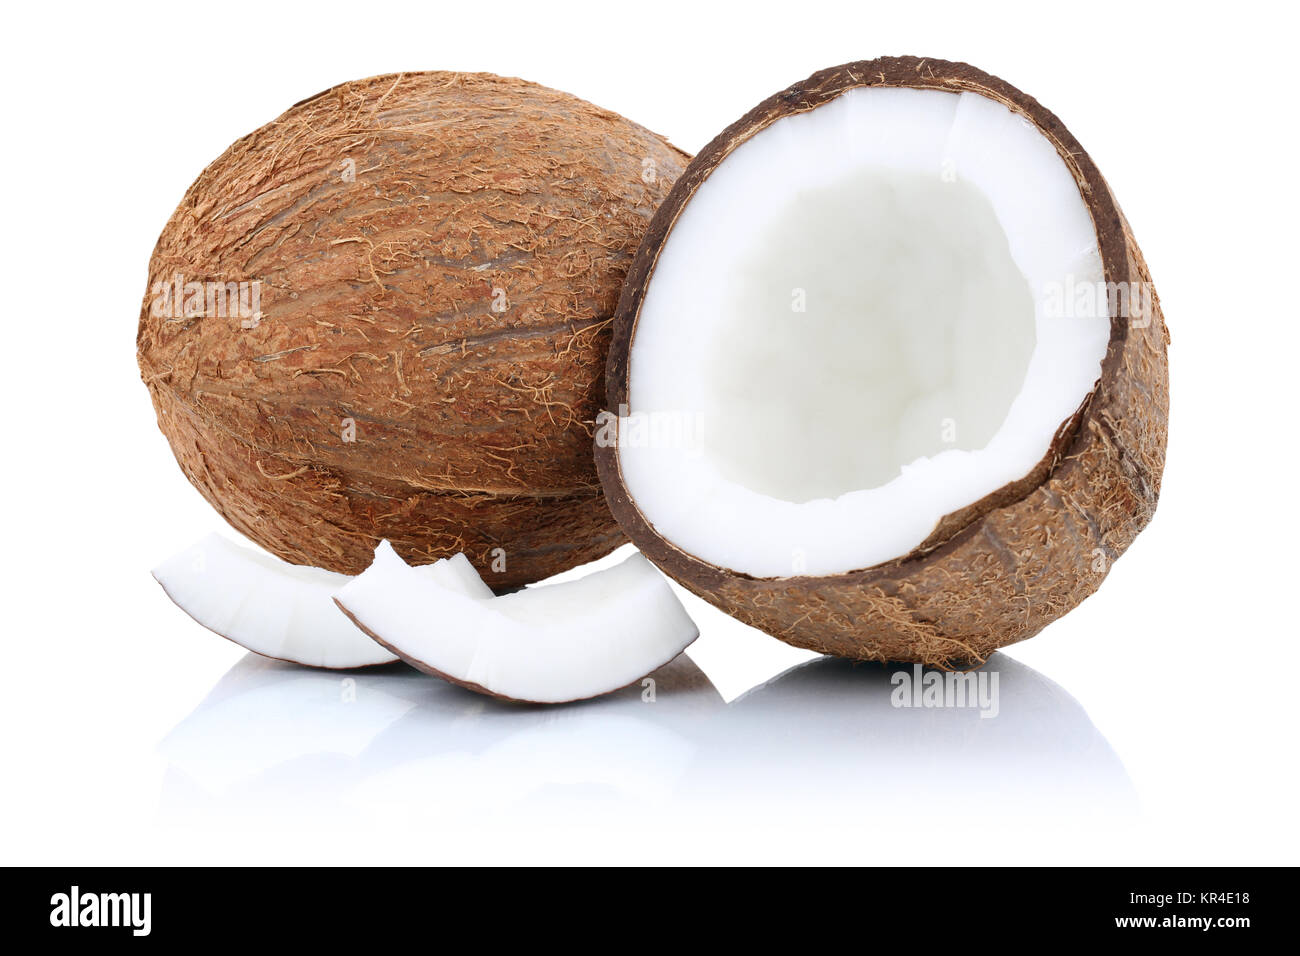 Kokosnuss Kokosnüsse Frucht Hälfte Früchte Freisteller freigestellt isoliert vor einem weissen Hintergrund Stock Photo